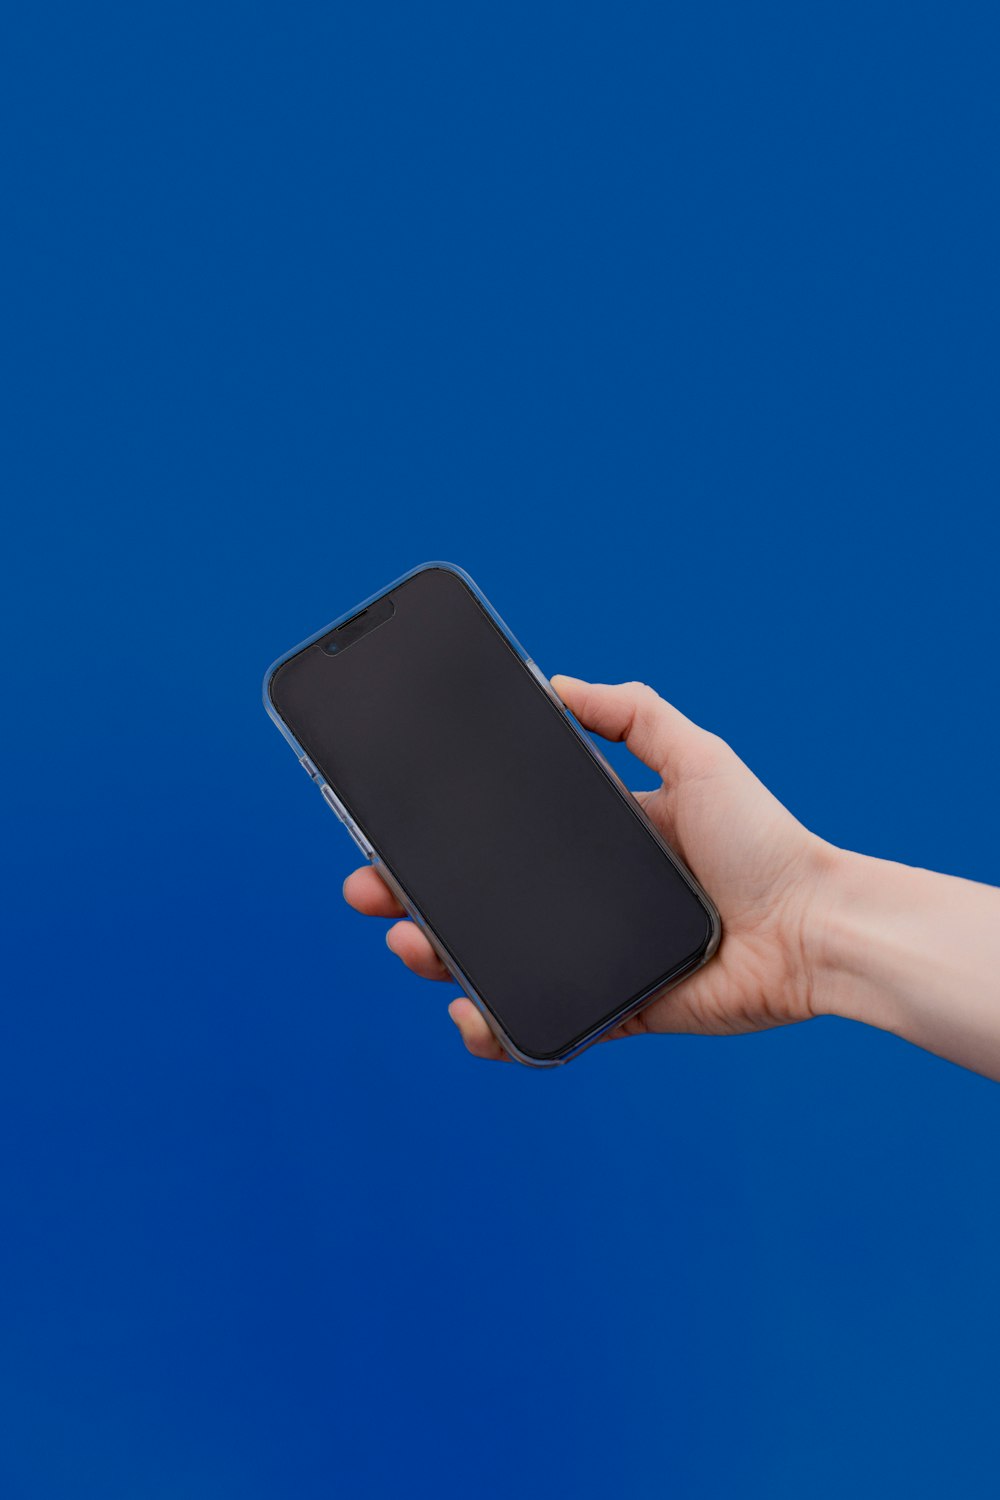 una mano sosteniendo un teléfono celular contra un fondo azul